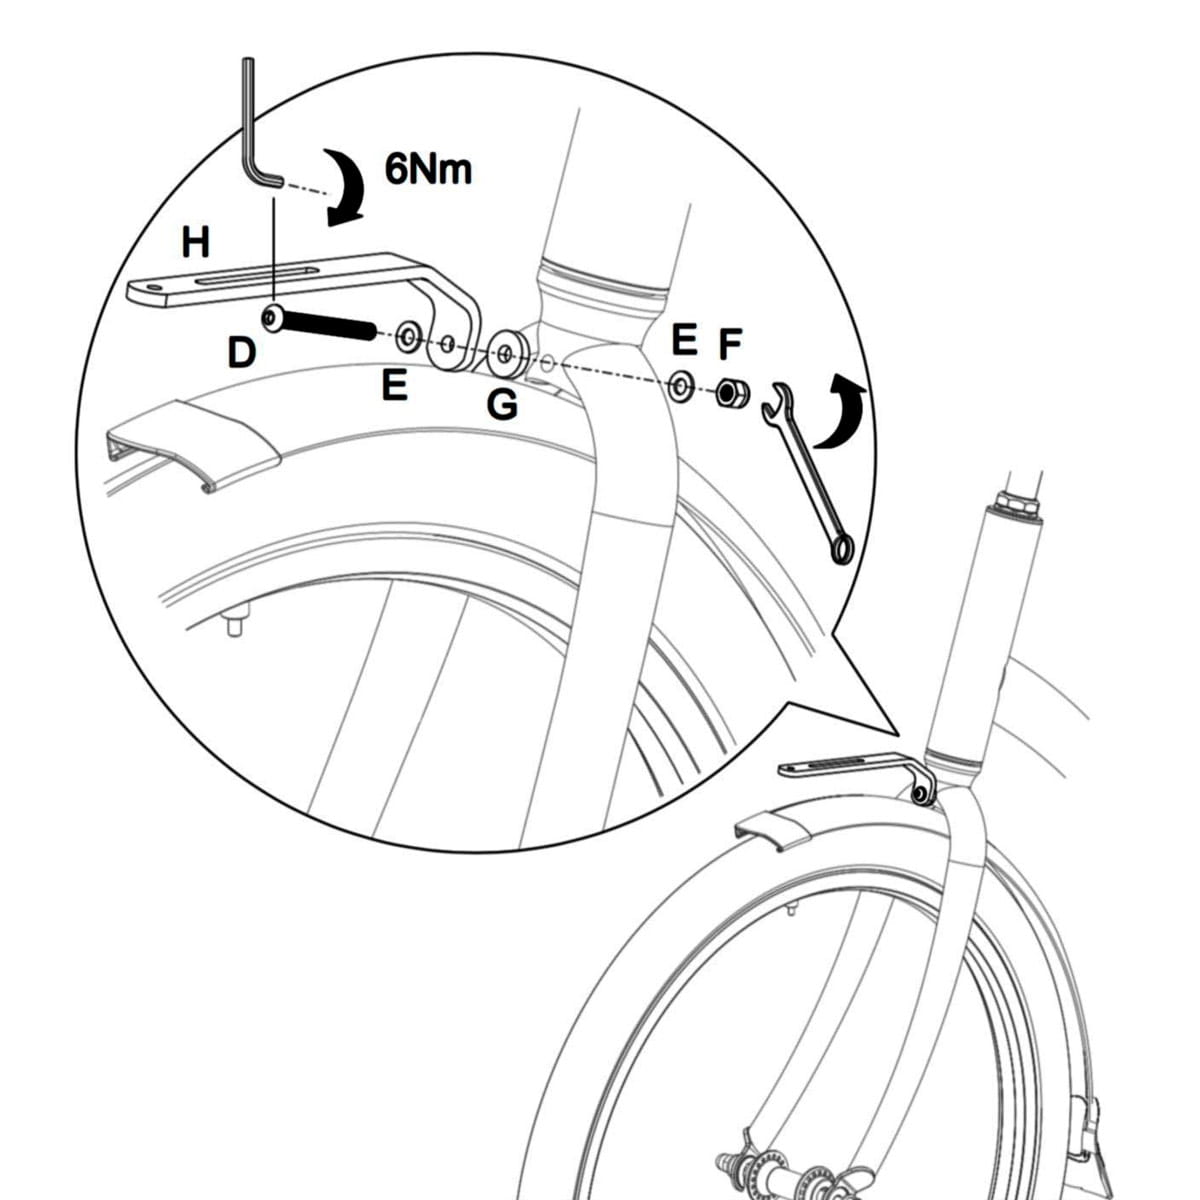 Basil Portland Bicycle Front Basket Vorderrad Gepäckträger / Korb 25L